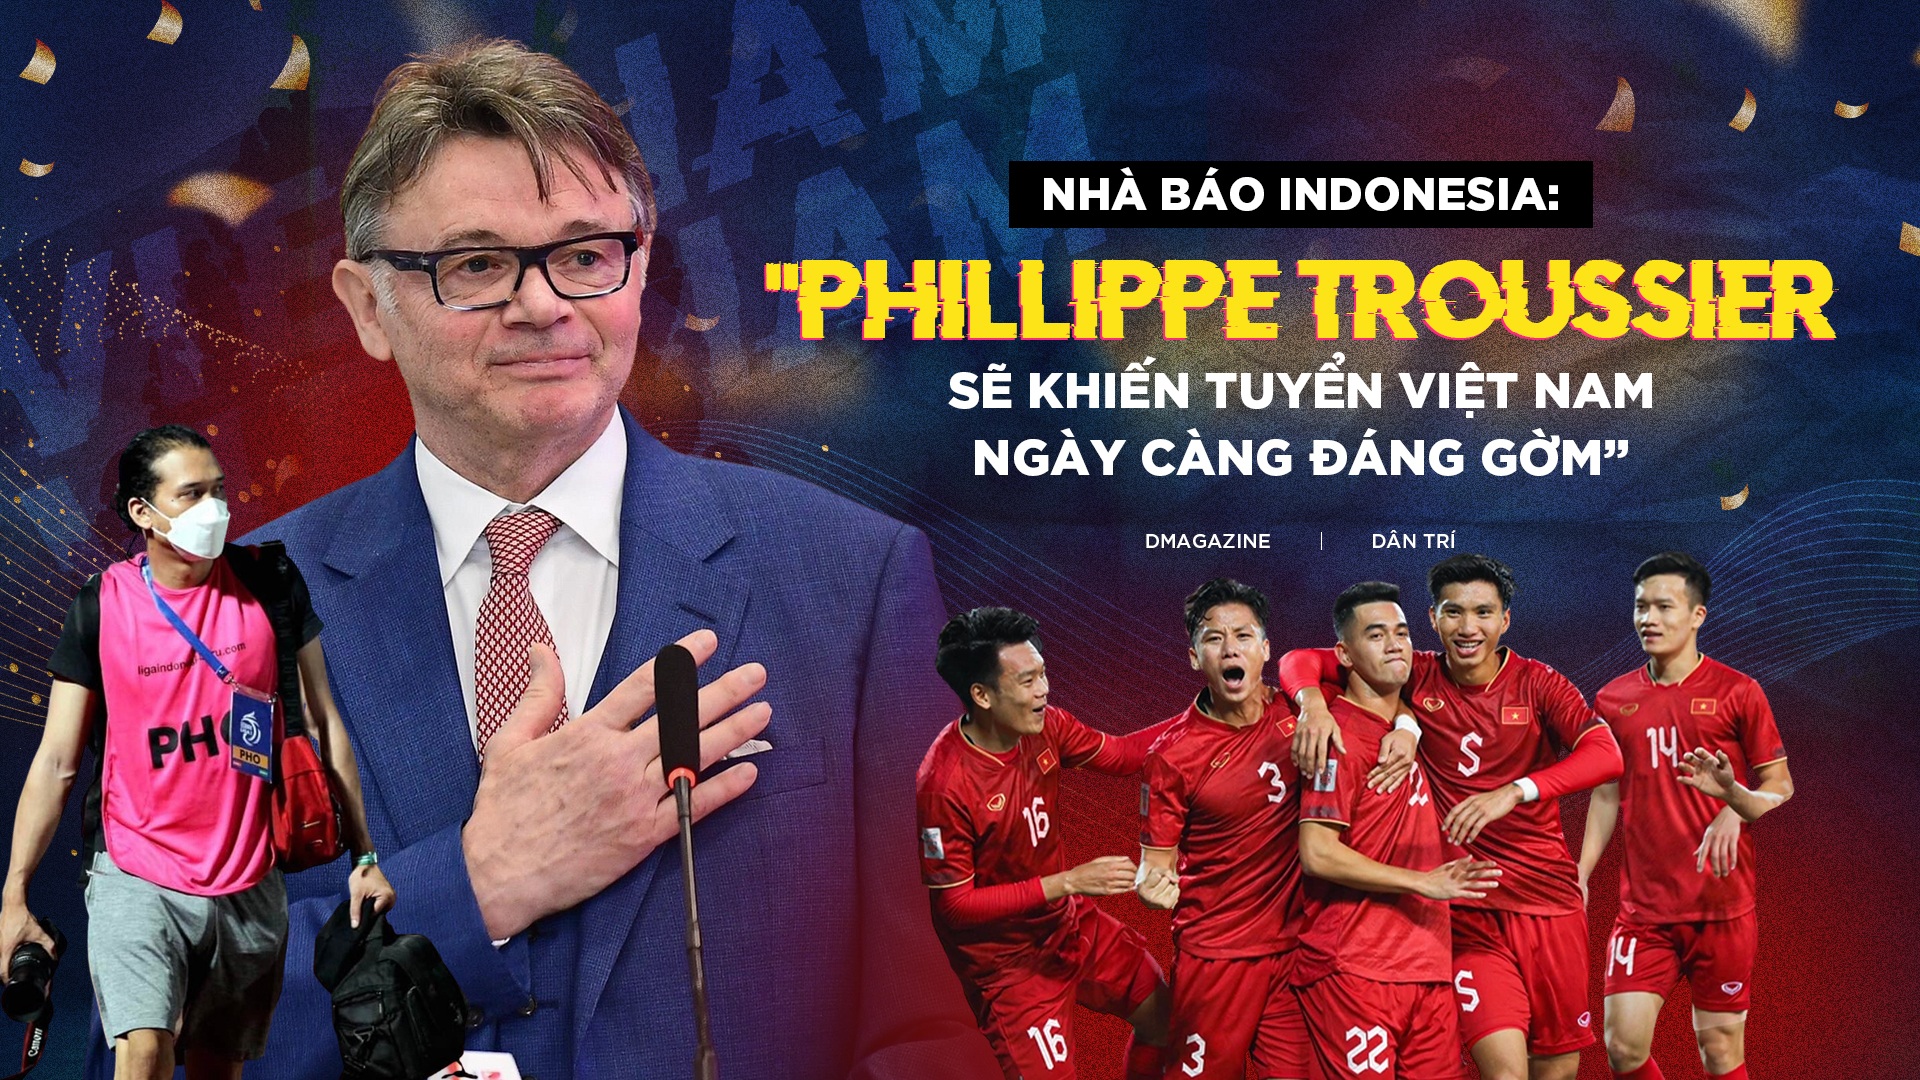 Nhà báo Indonesia: "HLV Troussier khiến tuyển Việt Nam ngày càng đáng gờm"